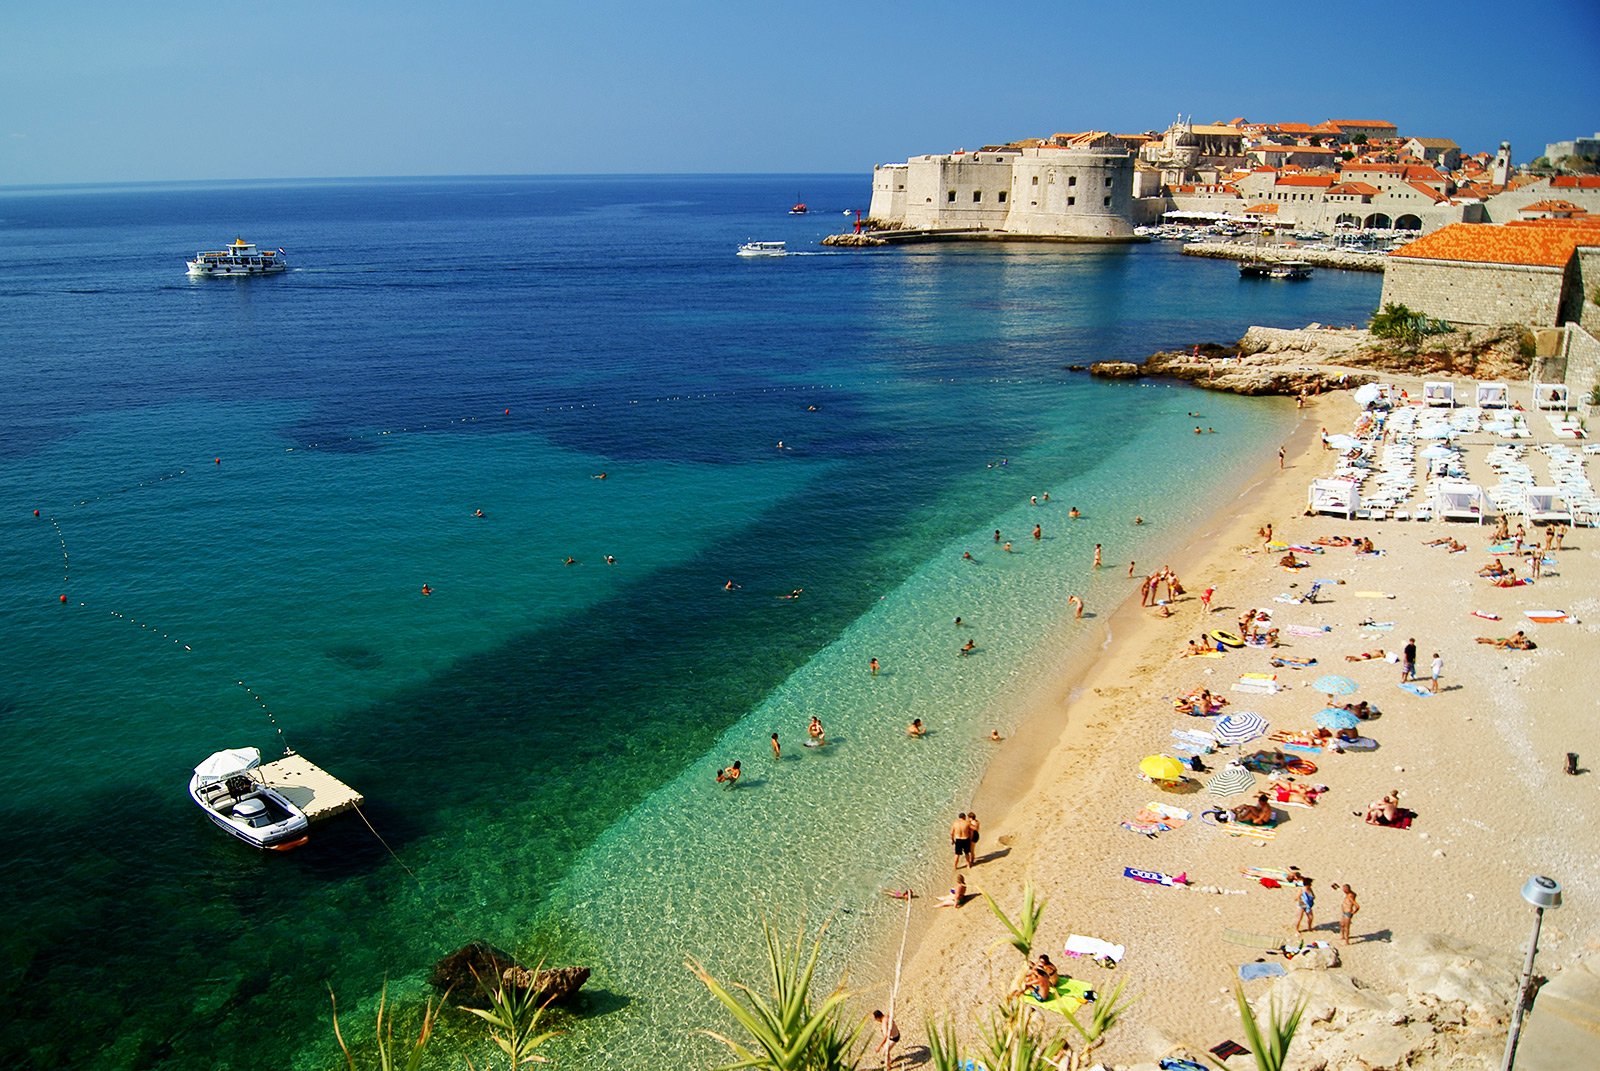 Banje Beach in Dubrovnik